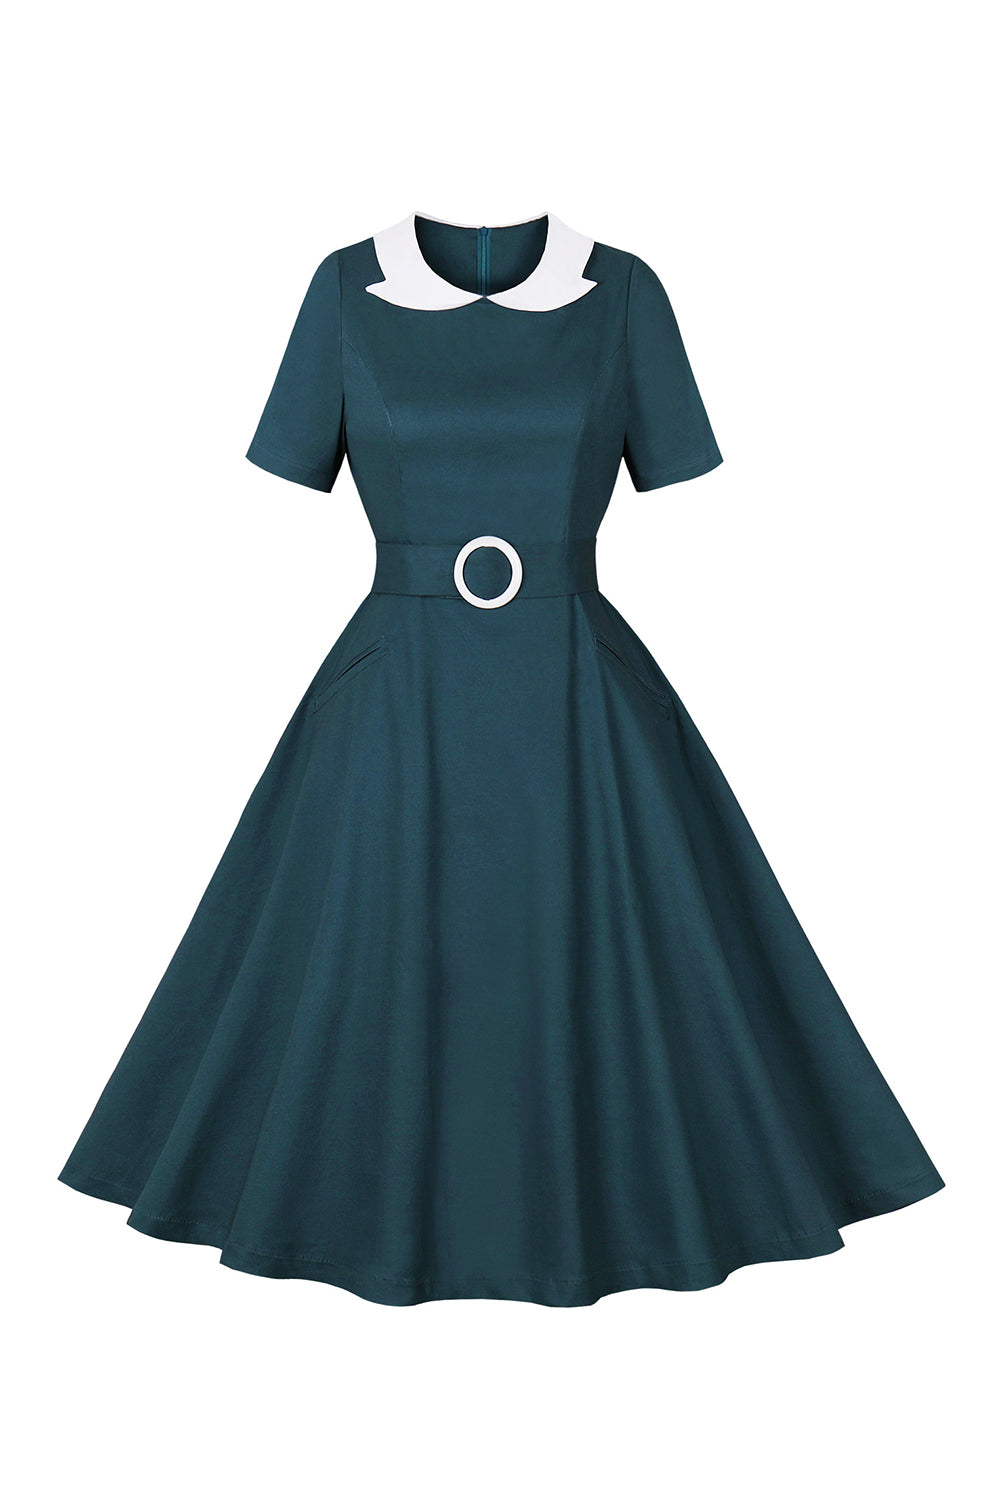 Peacock Blå A Line Swing 1950'erne kjole med bælte